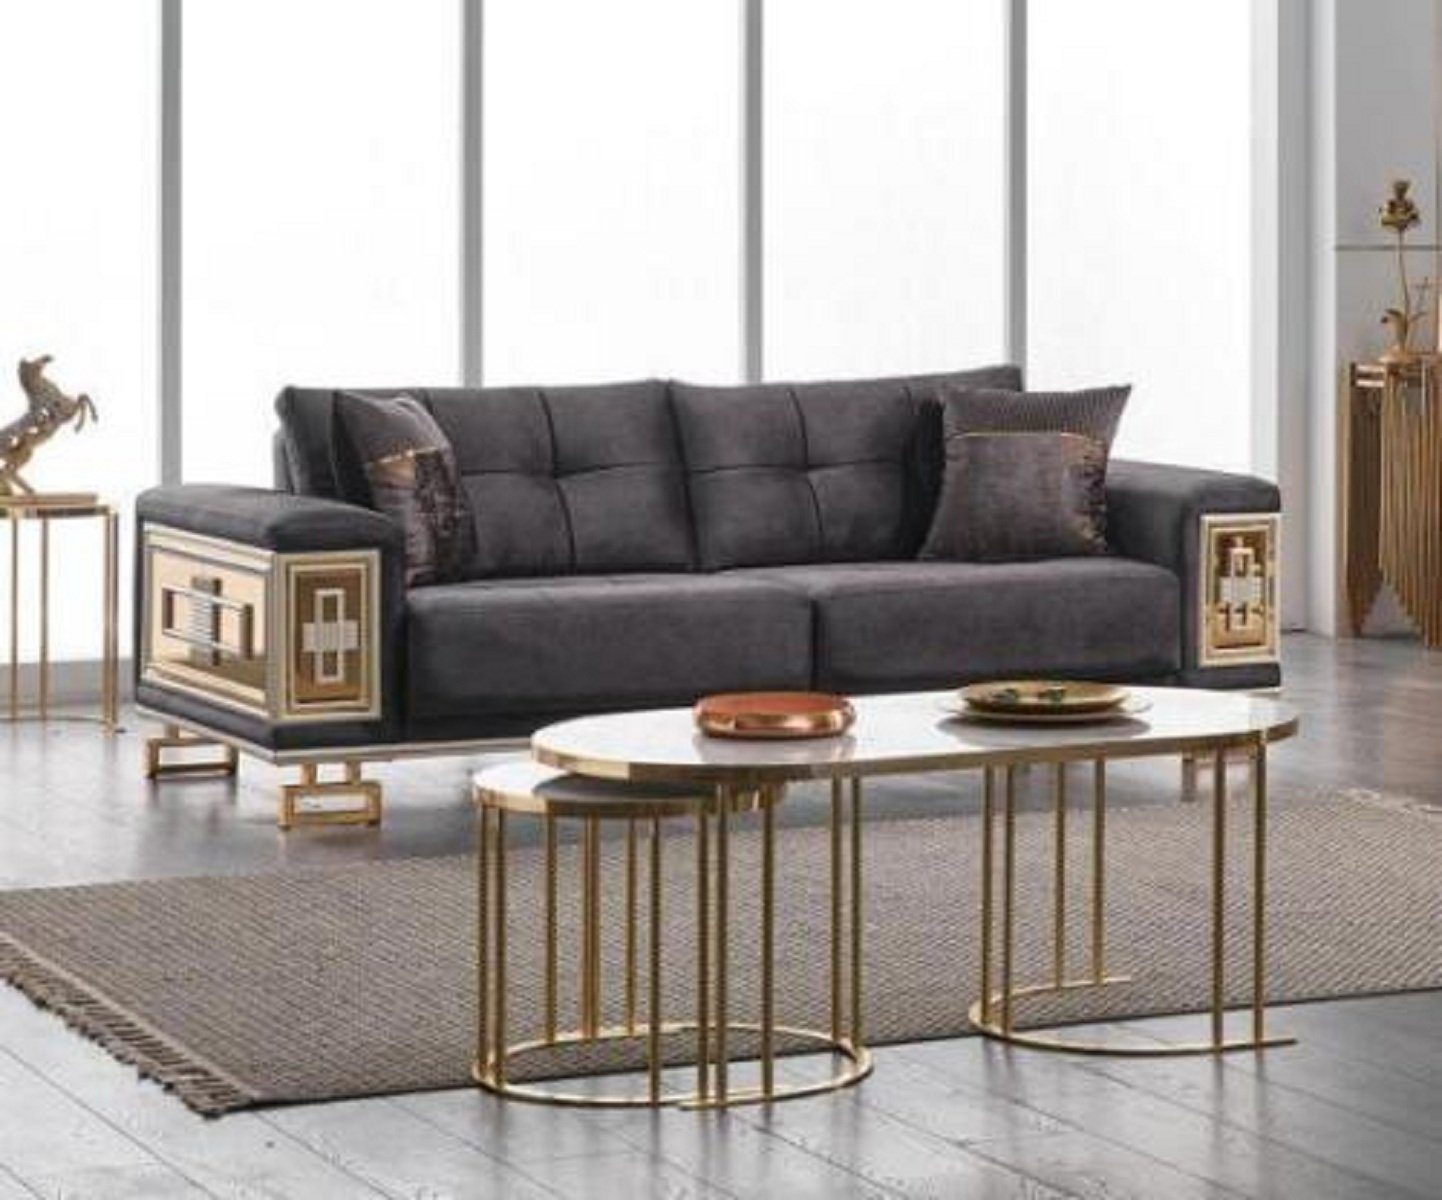 JVmoebel 3-Sitzer Grauer Moderner 3 sitzer Sofa Wohnzimmermöbel Edle Couch Textilmöbel, 1 Teile, Made in Europa